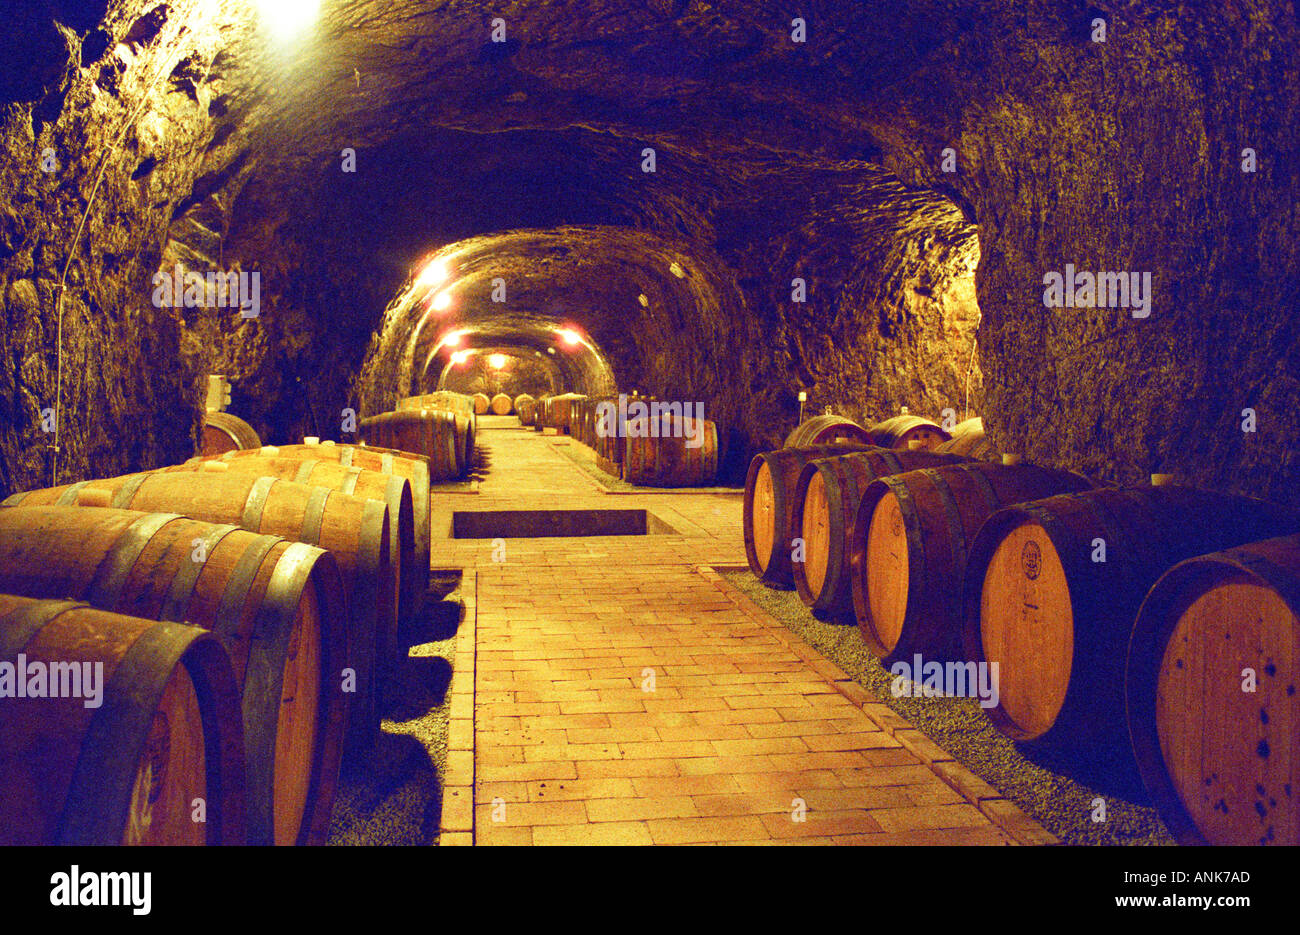 Le Château Dereszla winery : la cave souterraine. Un tunnel avec des barils de vin de Tokaj. Banque D'Images